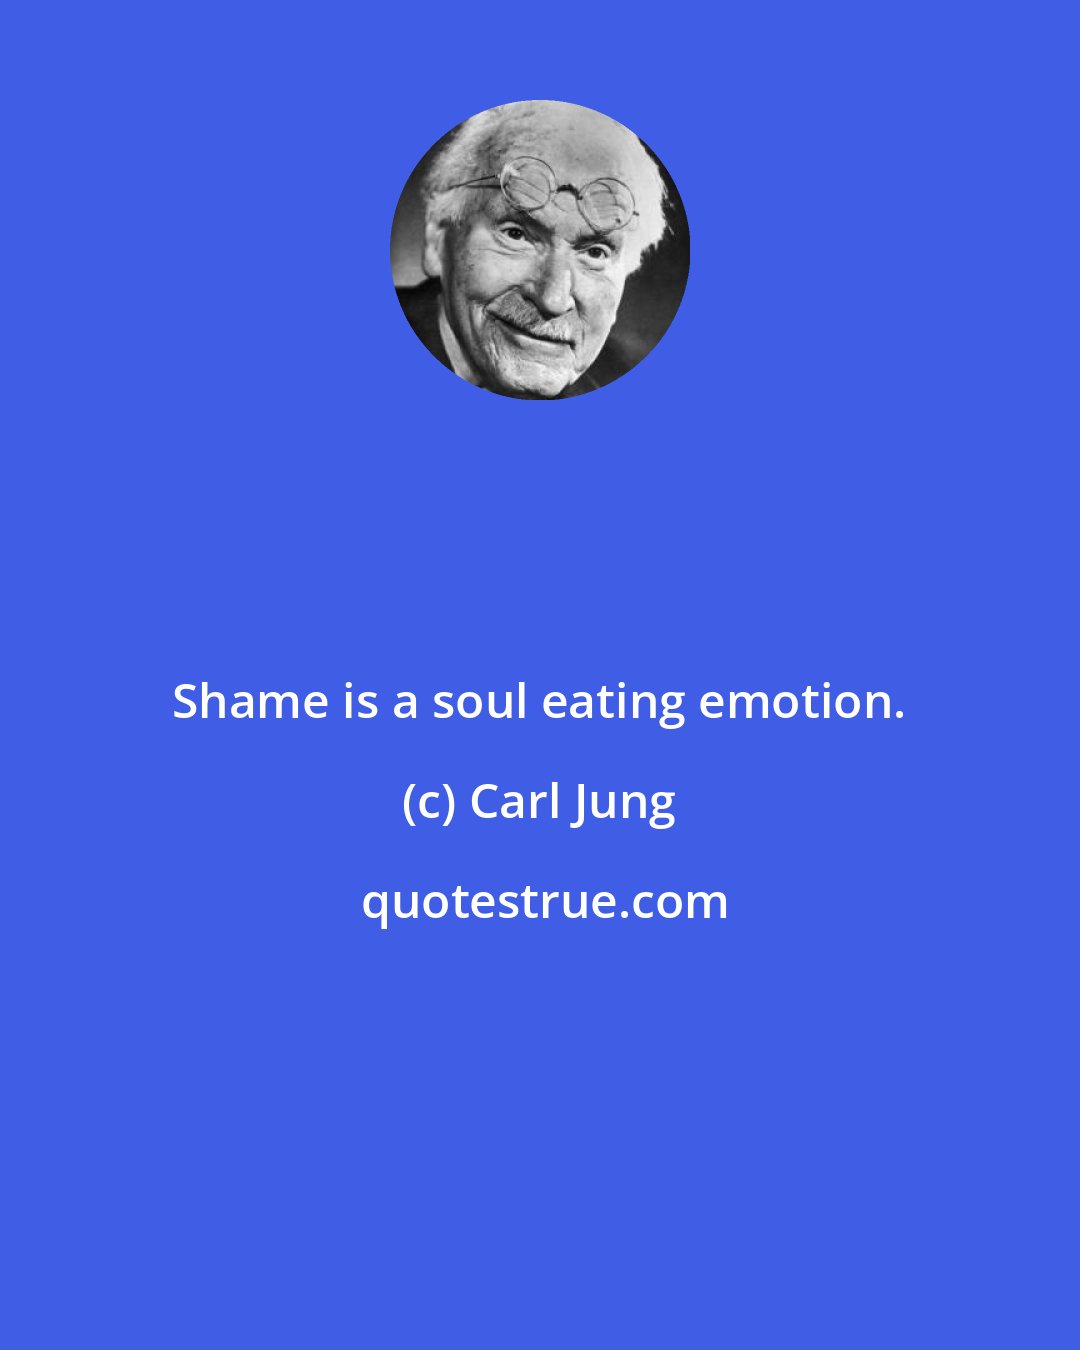 Carl Jung: Shame is a soul eating emotion.